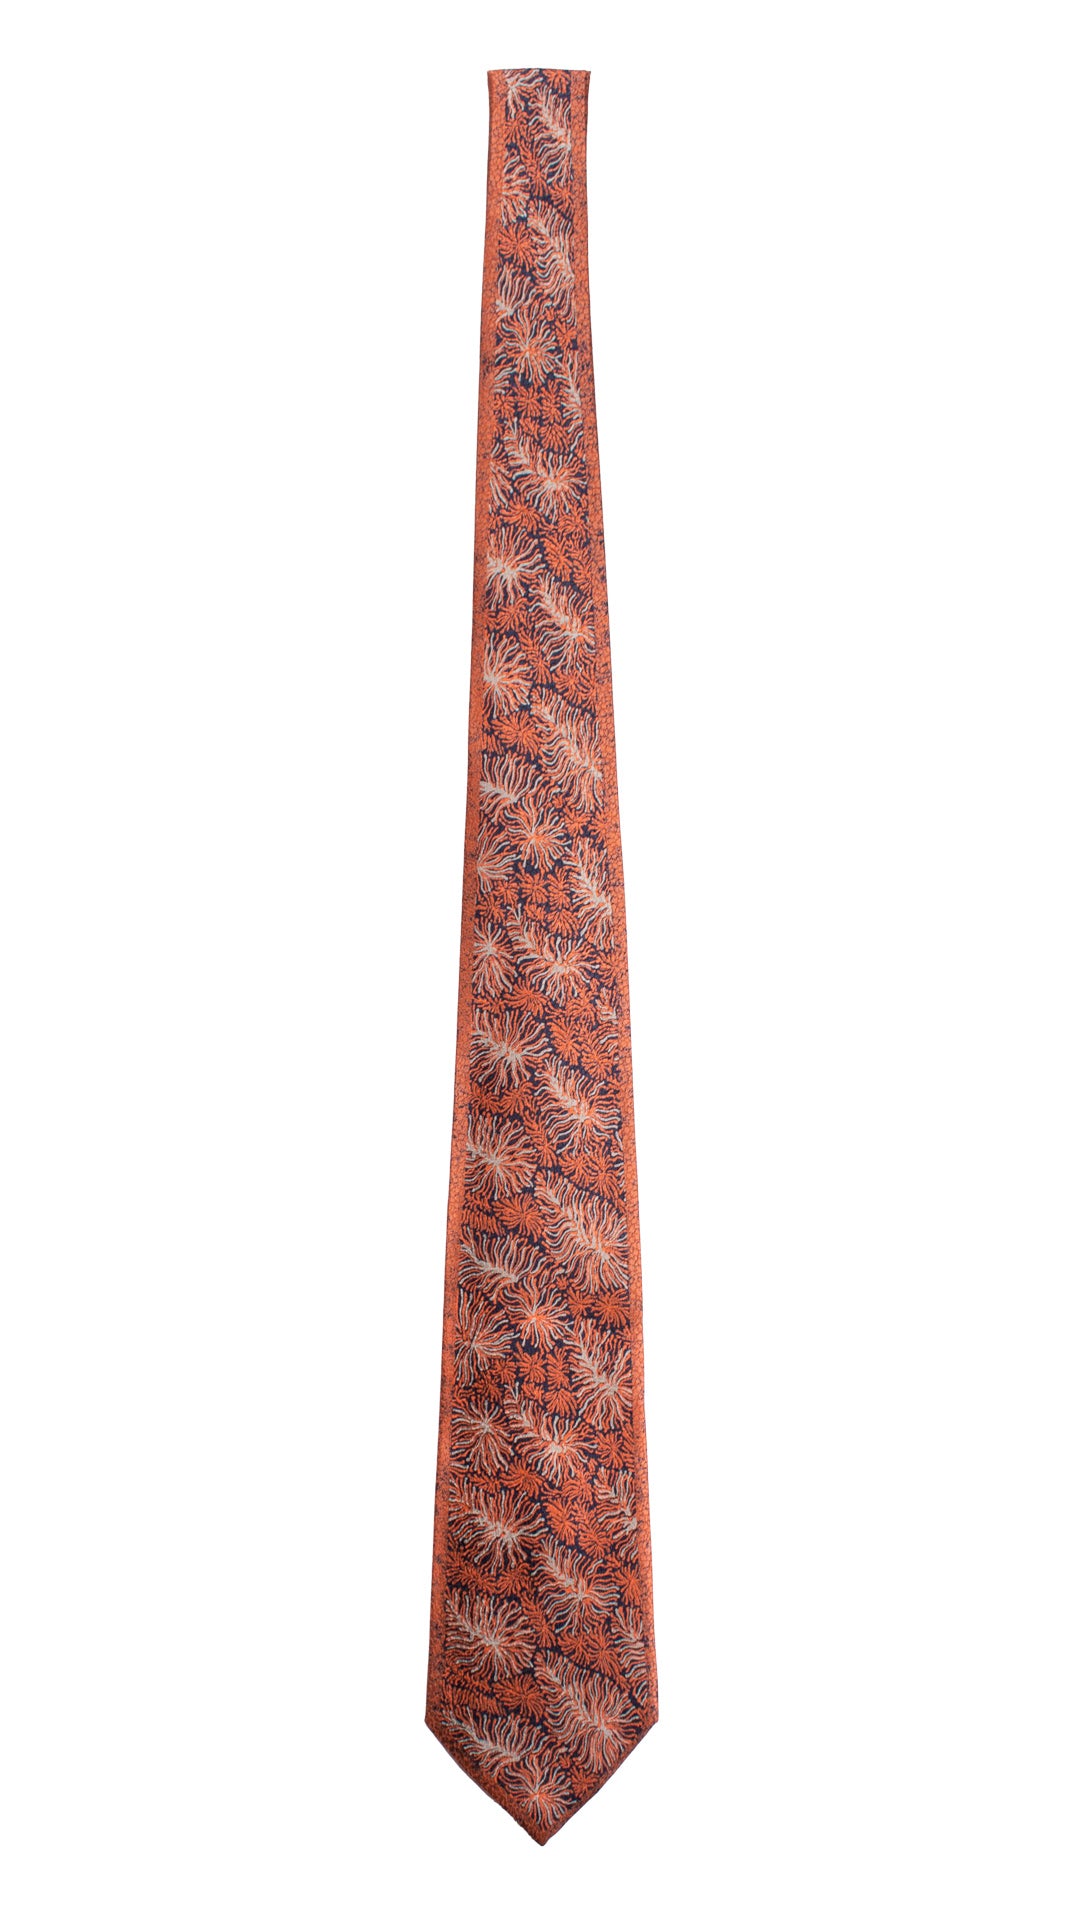 Cravatta Vintage di Seta Jacquard Color Mattone Fantasia Blu Grigio Argento CV801 Intera